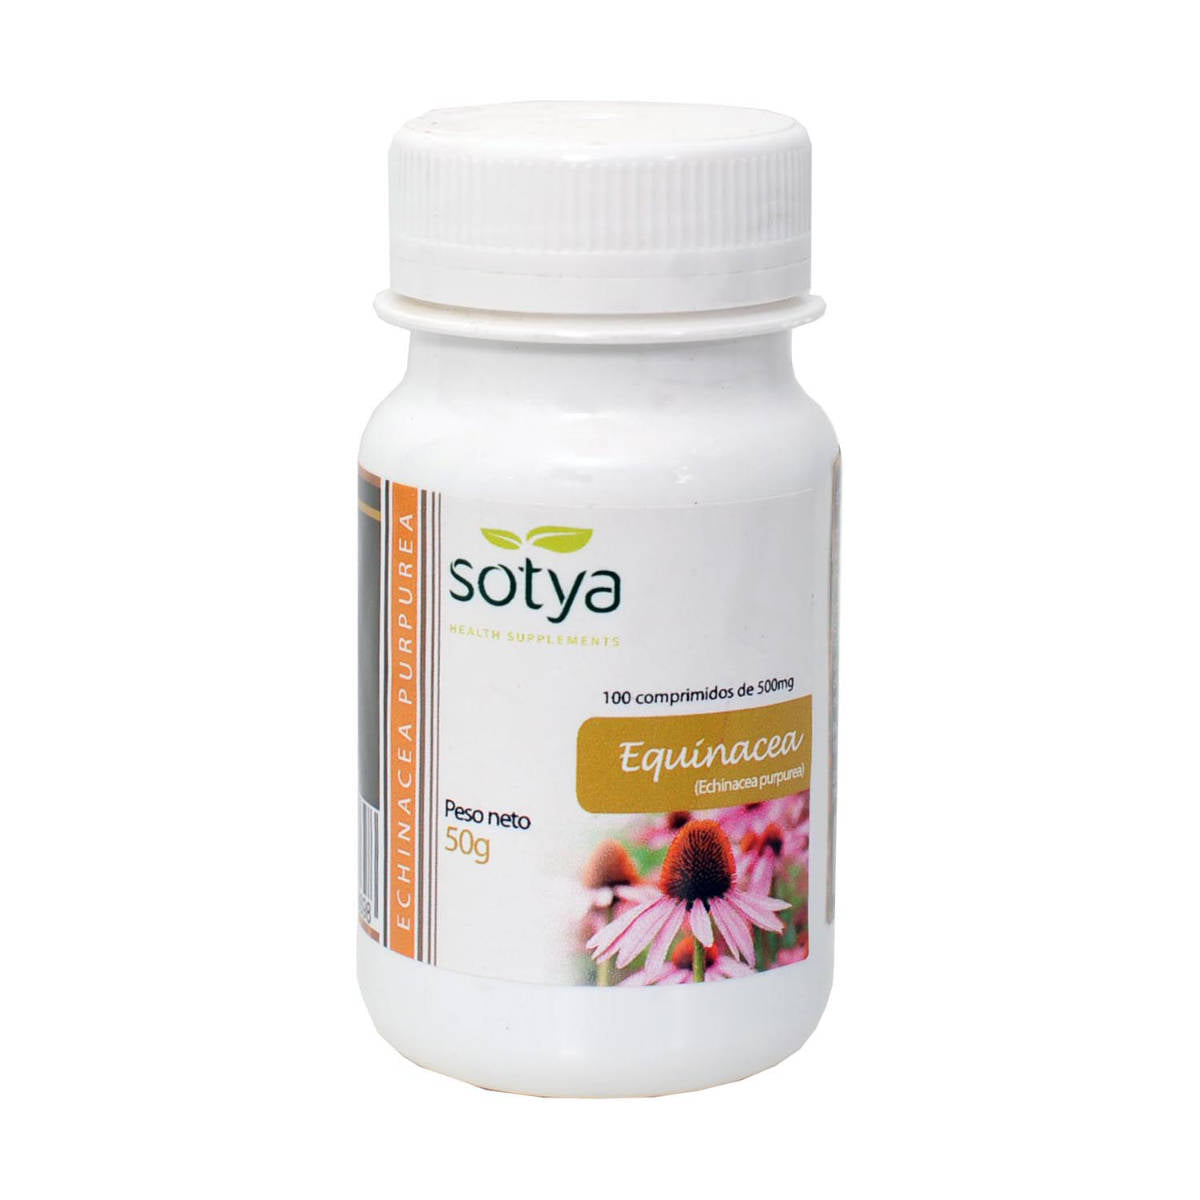 Sotya-Equinacea-100-Comprimidos--Biopharmacia,-Parafarmacia-online